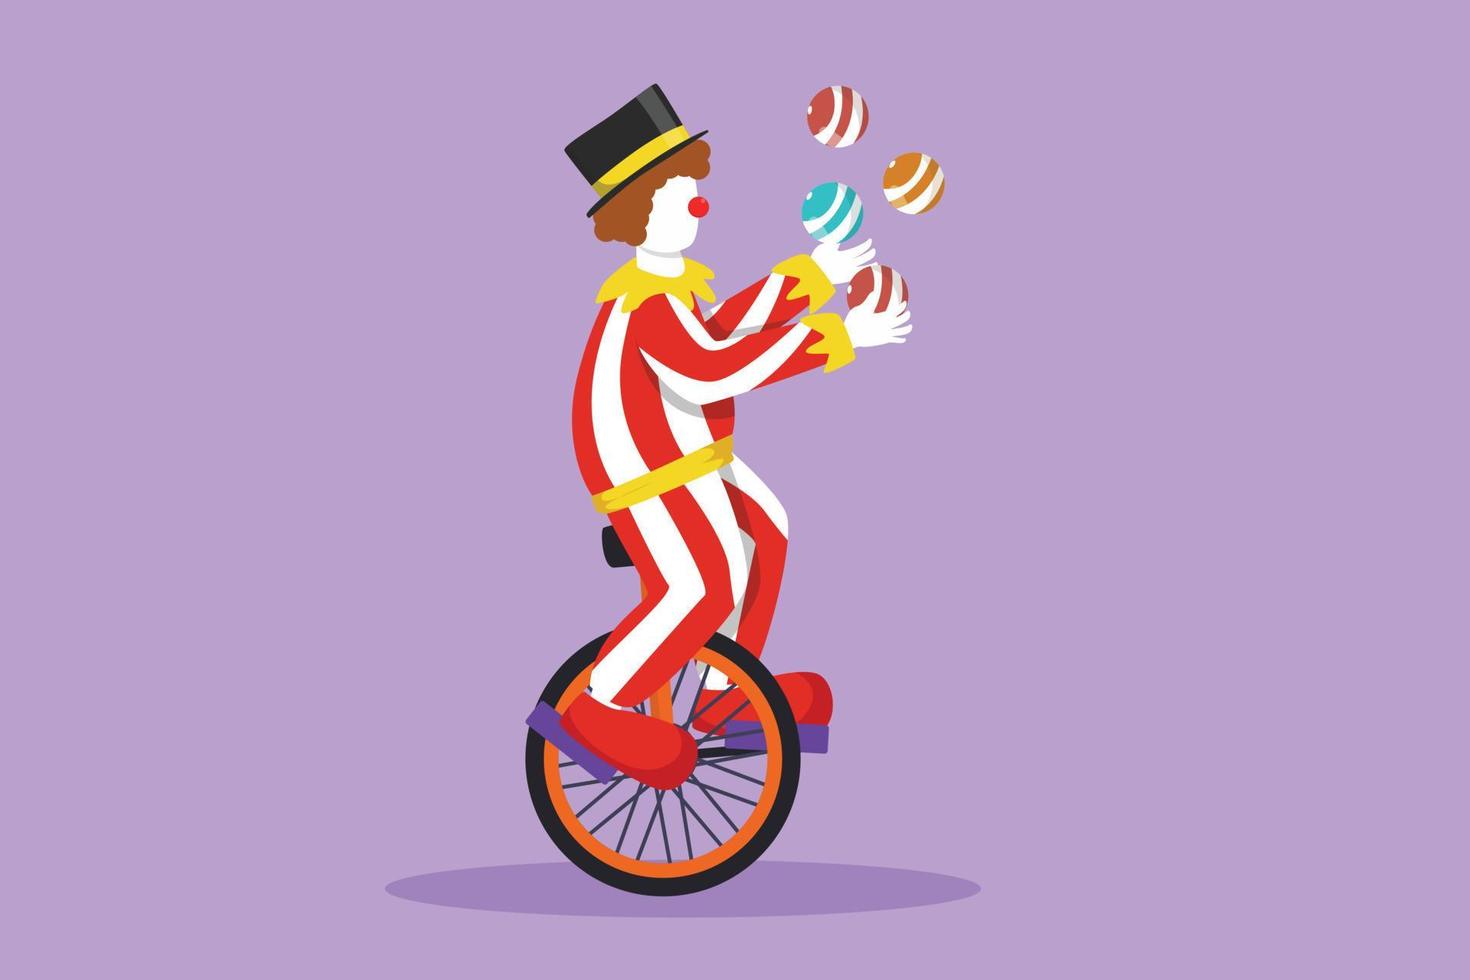 dessin animé plat style dessinant un clown masculin attrayant jonglant sur un vélo. le clown jouant était très drôle et a diverti le public. performance d'événement de spectacle de cirque. illustration vectorielle de conception graphique vecteur